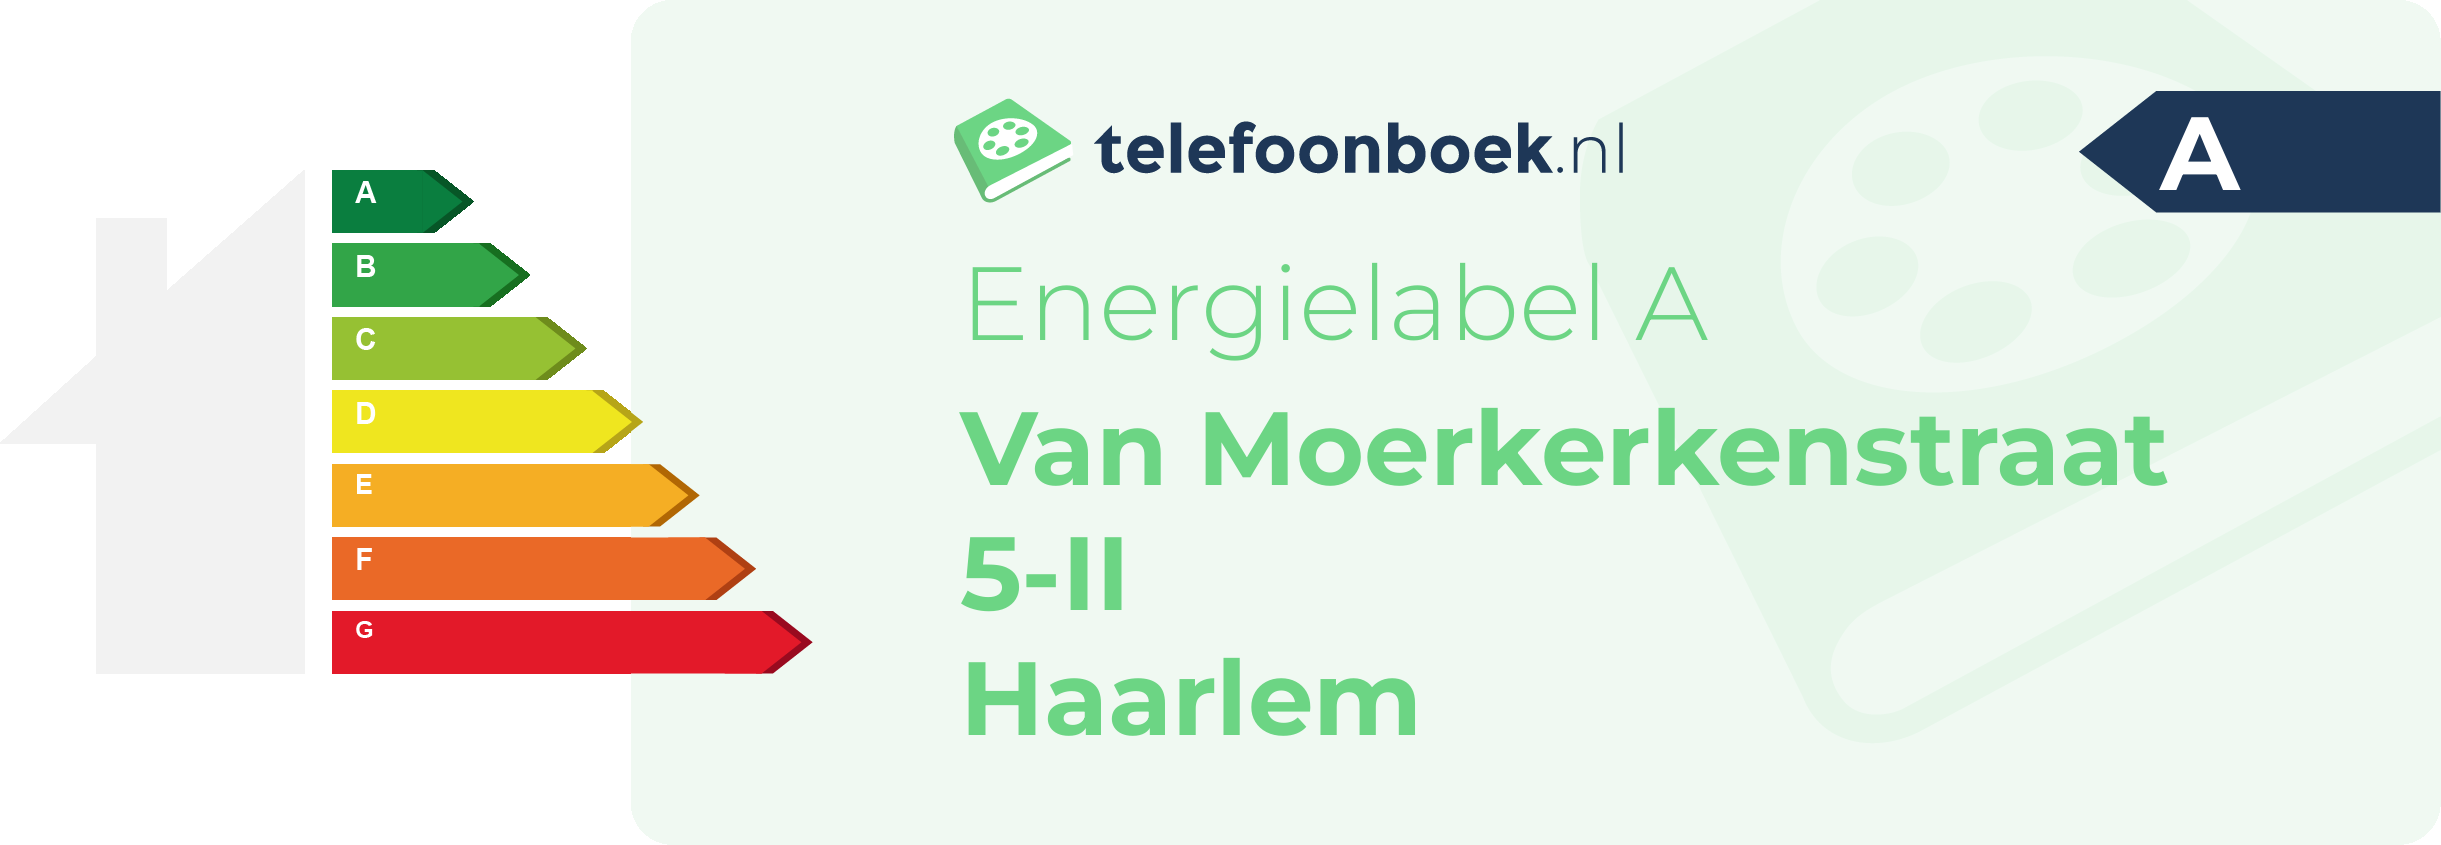 Energielabel Van Moerkerkenstraat 5-II Haarlem